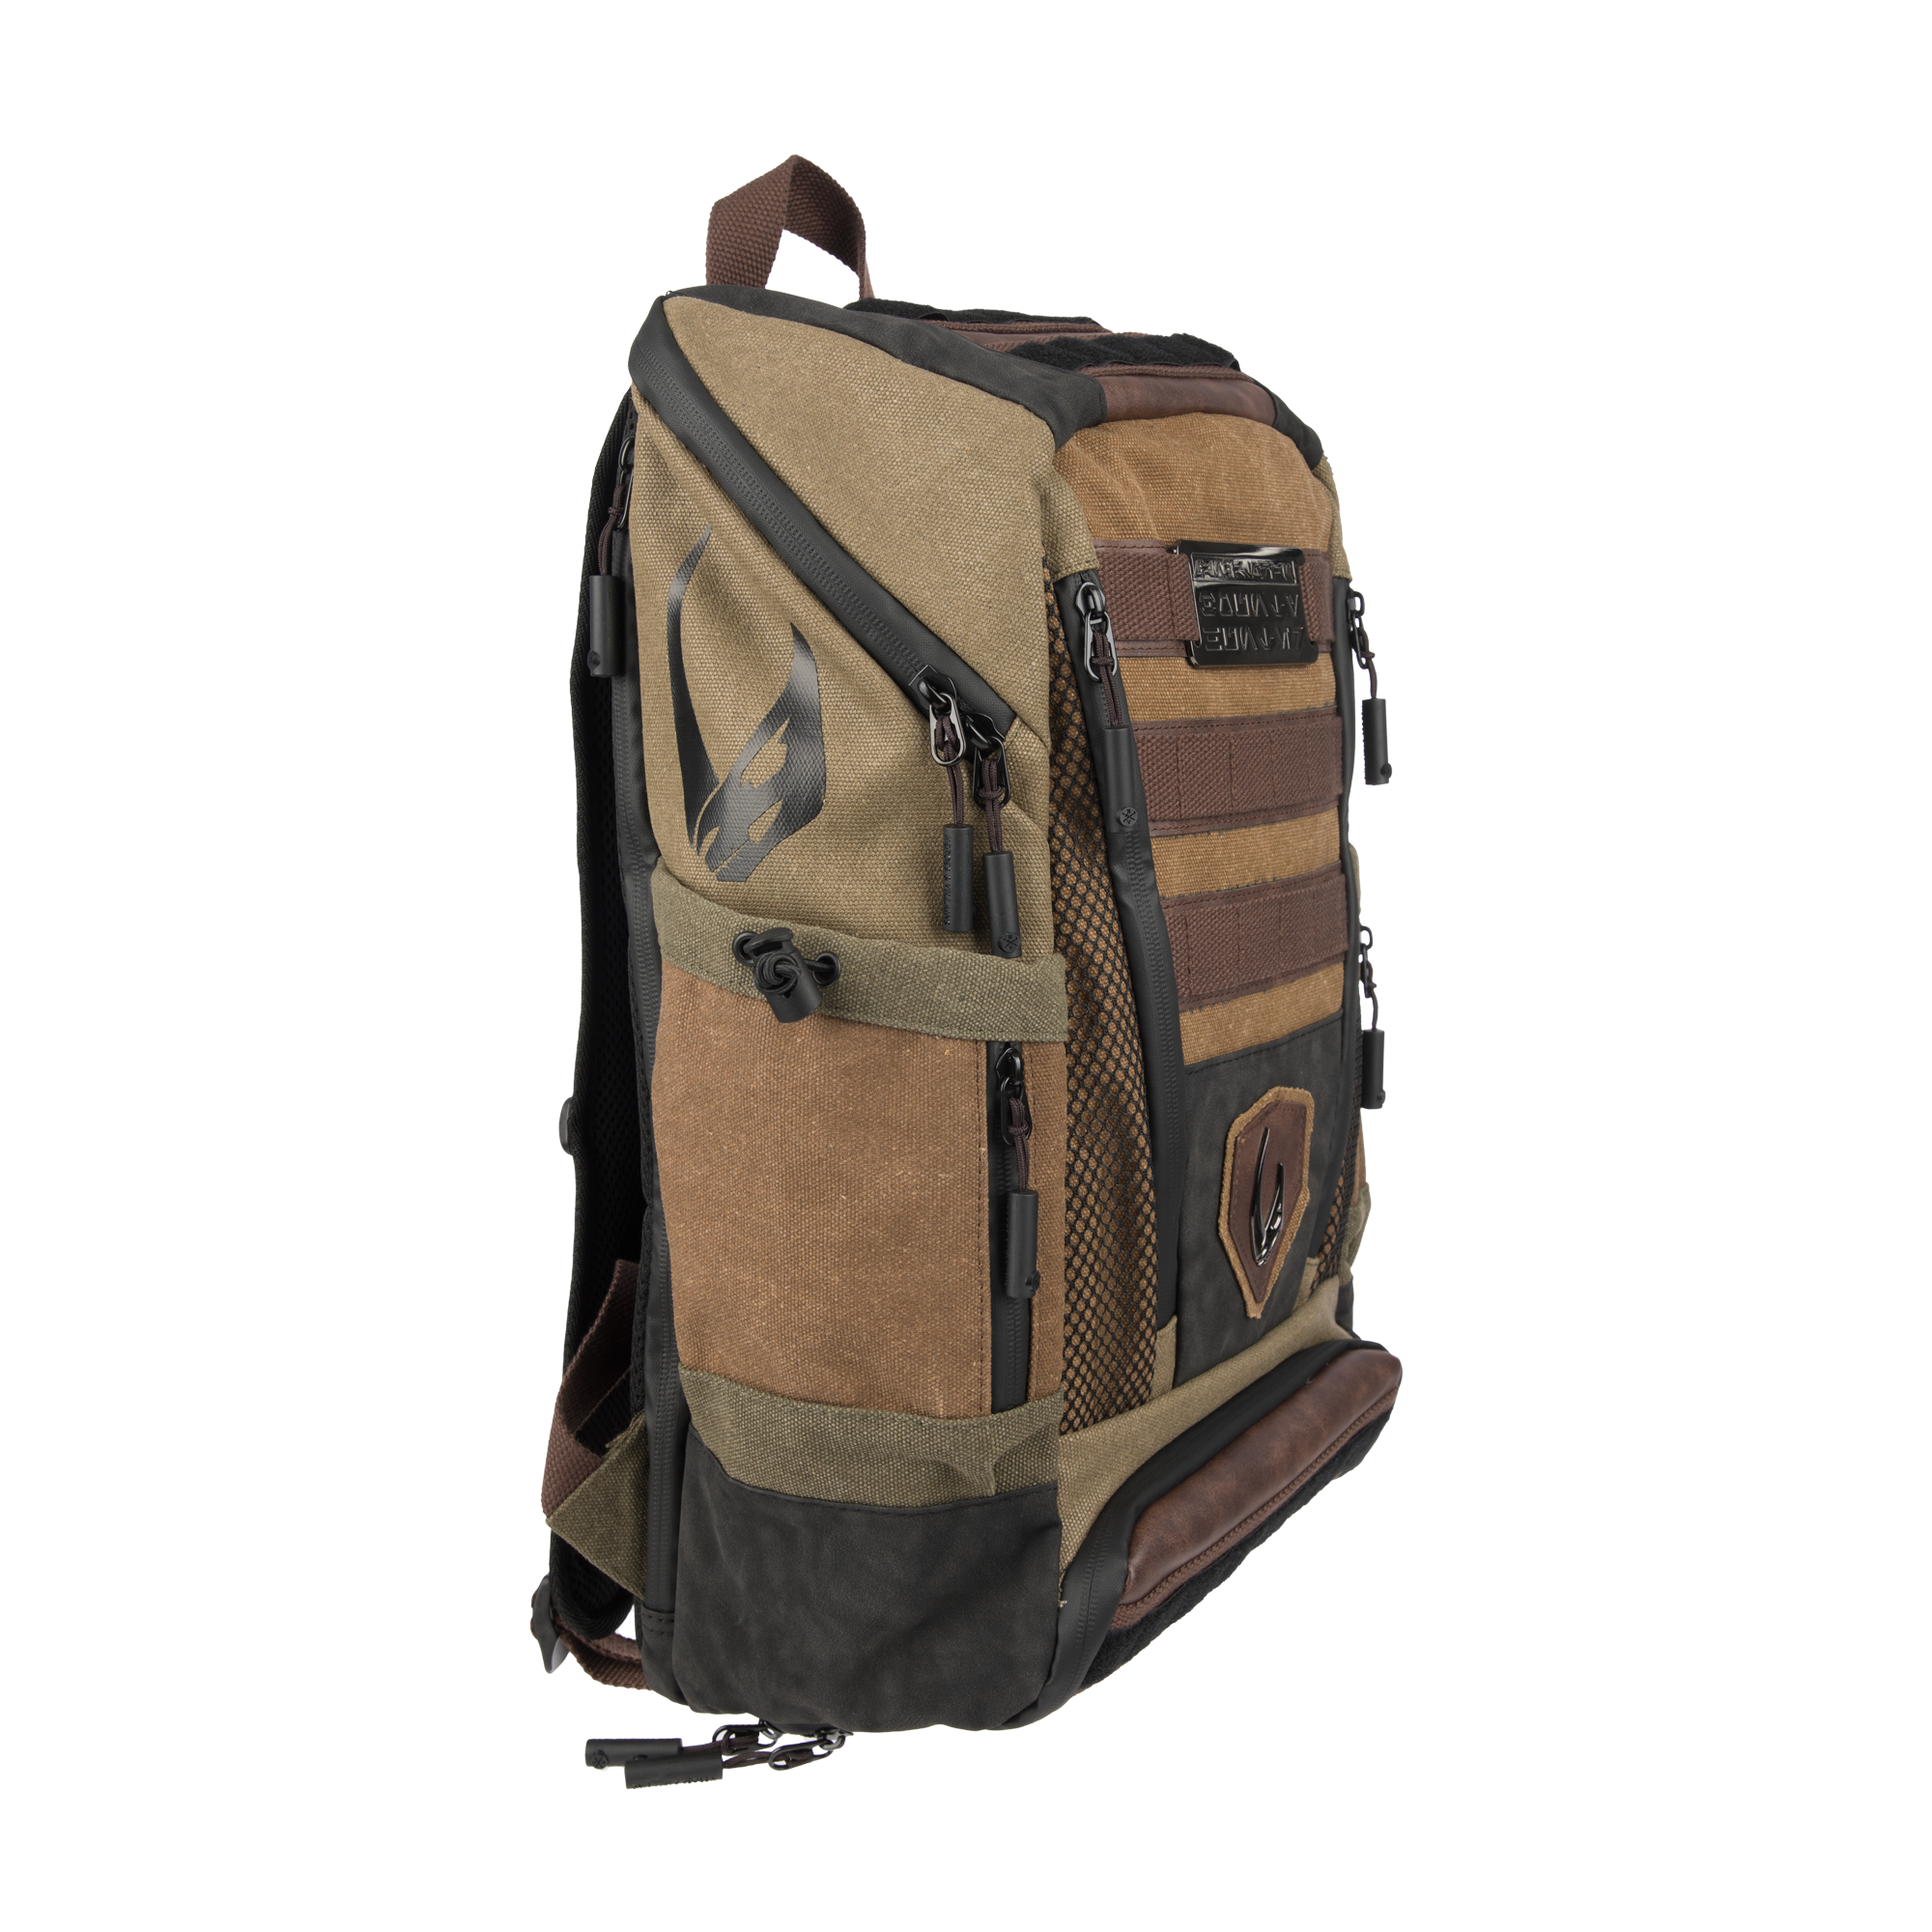 Mudhorn Mandalorian Bounty Hunter Backpack